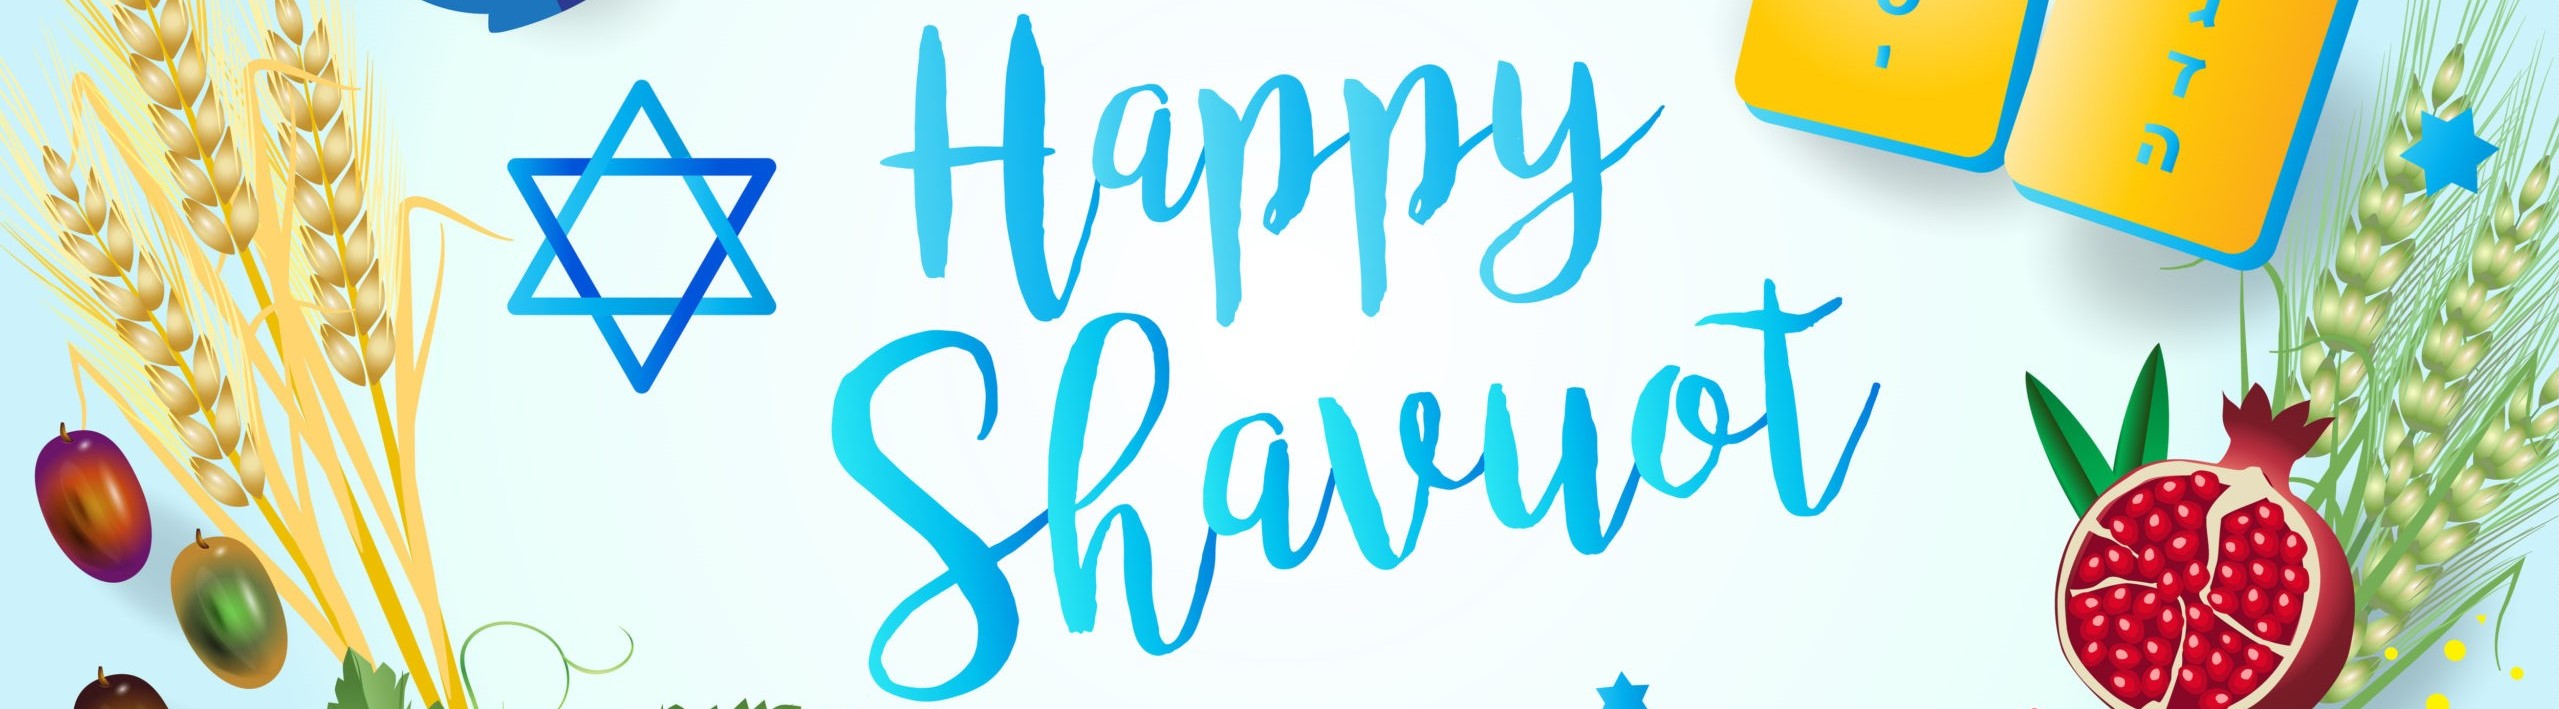 Happy Shavuot.